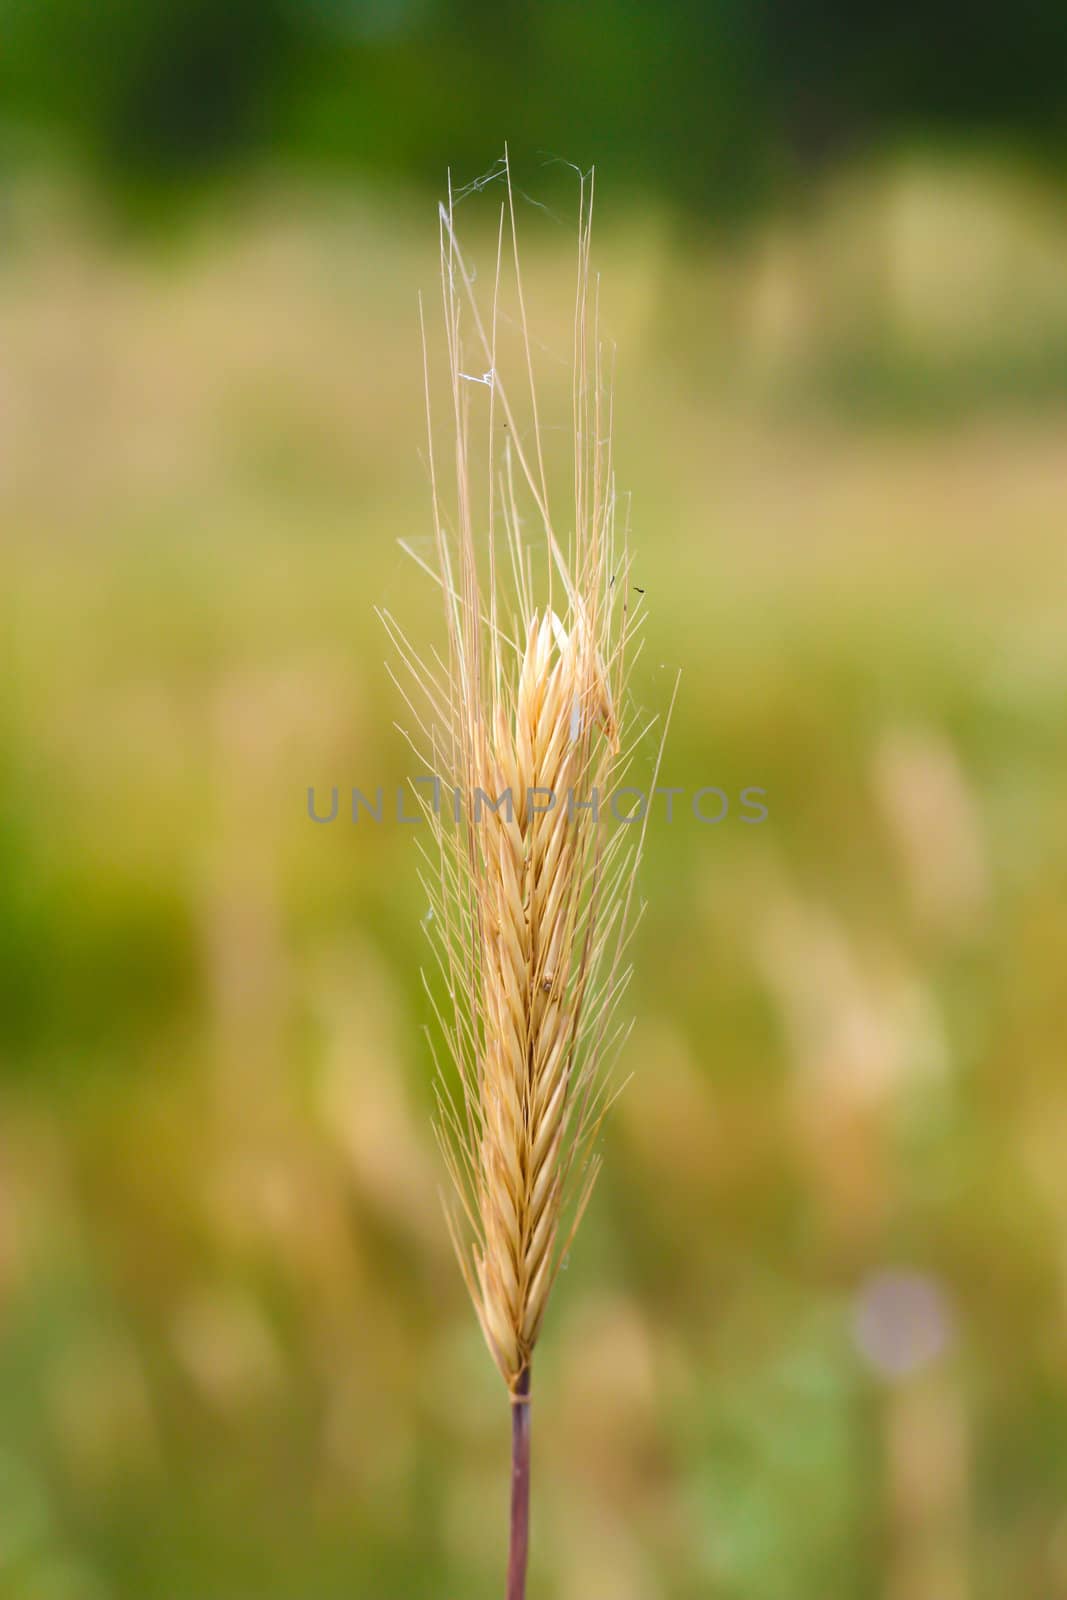 an ear of wheat on a green background by schankz